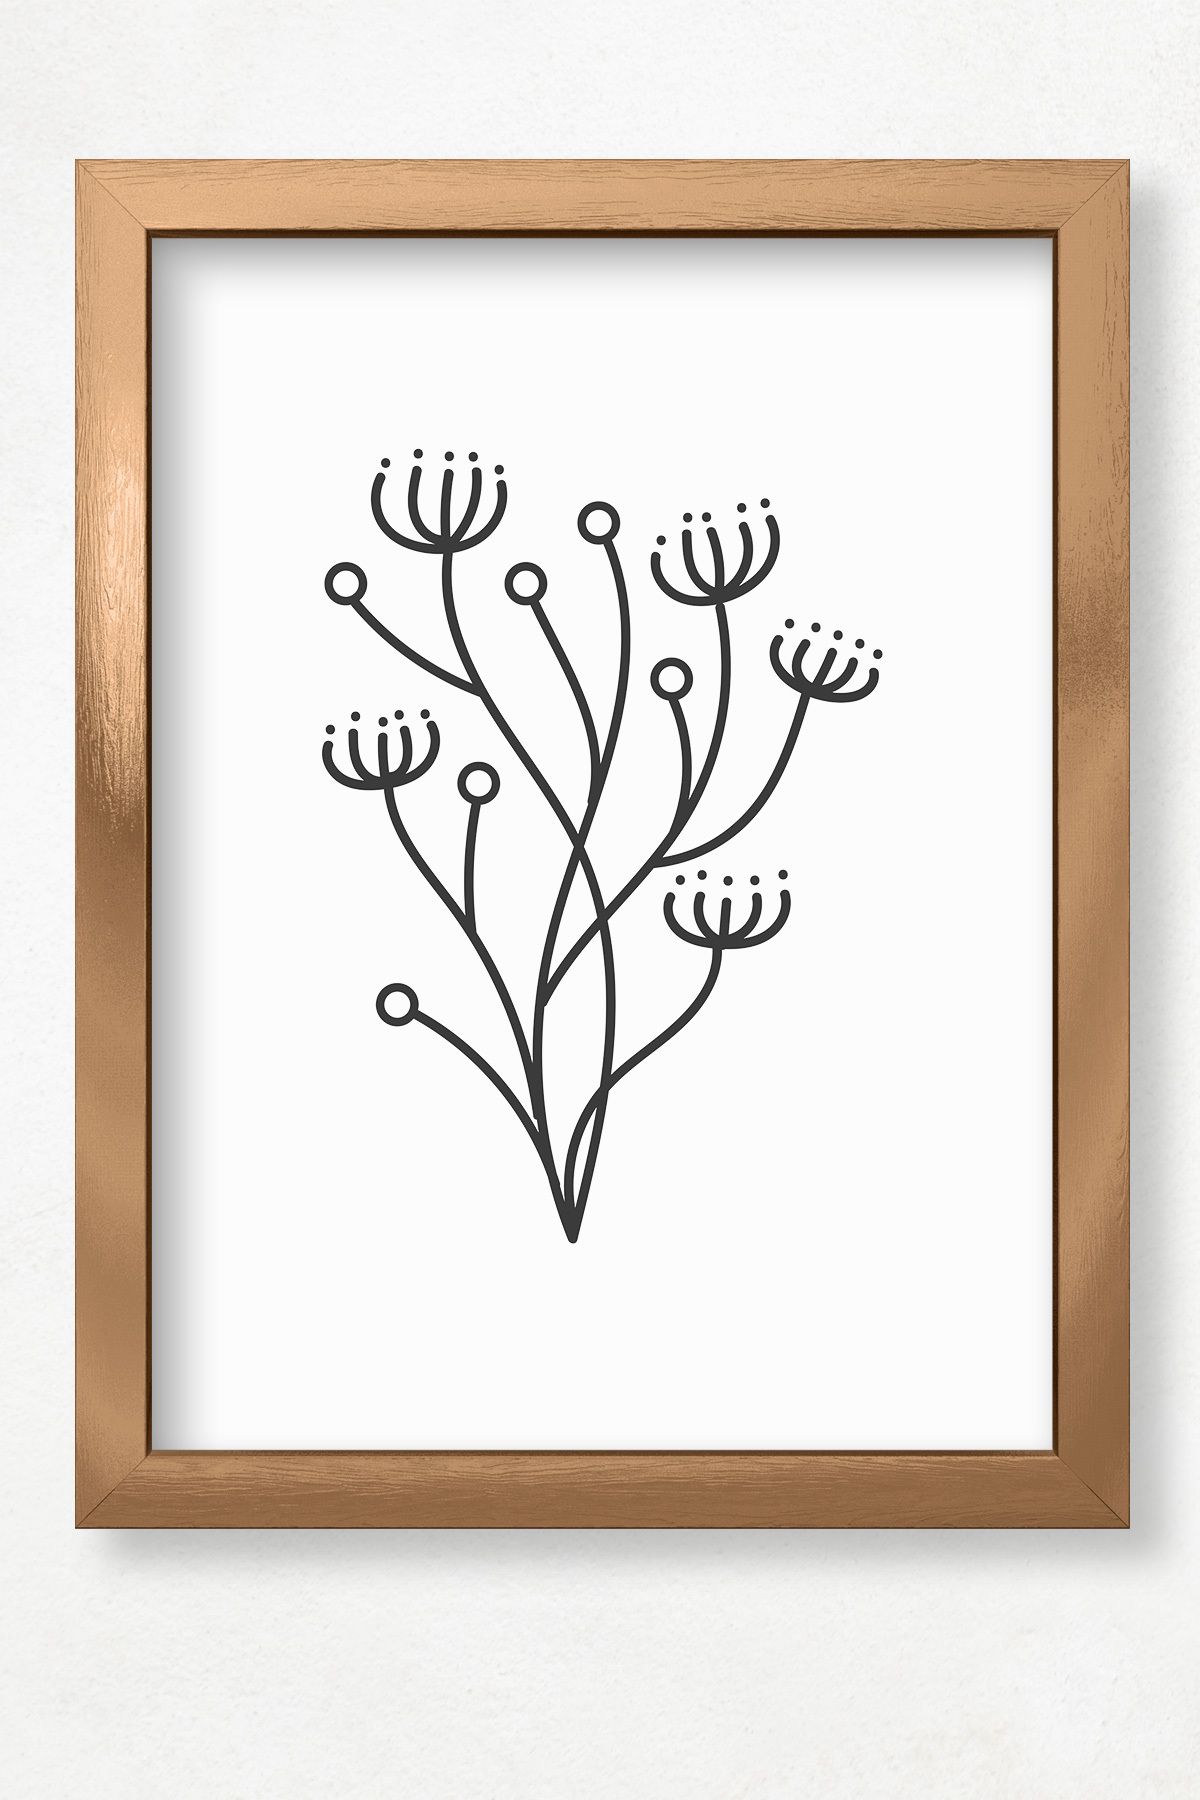 DuoArt Çiçek Bitki Minimalist/Line Art/Doğal Ahşap Çerçeveli Poster/Çerçeve Rengi:Bronz